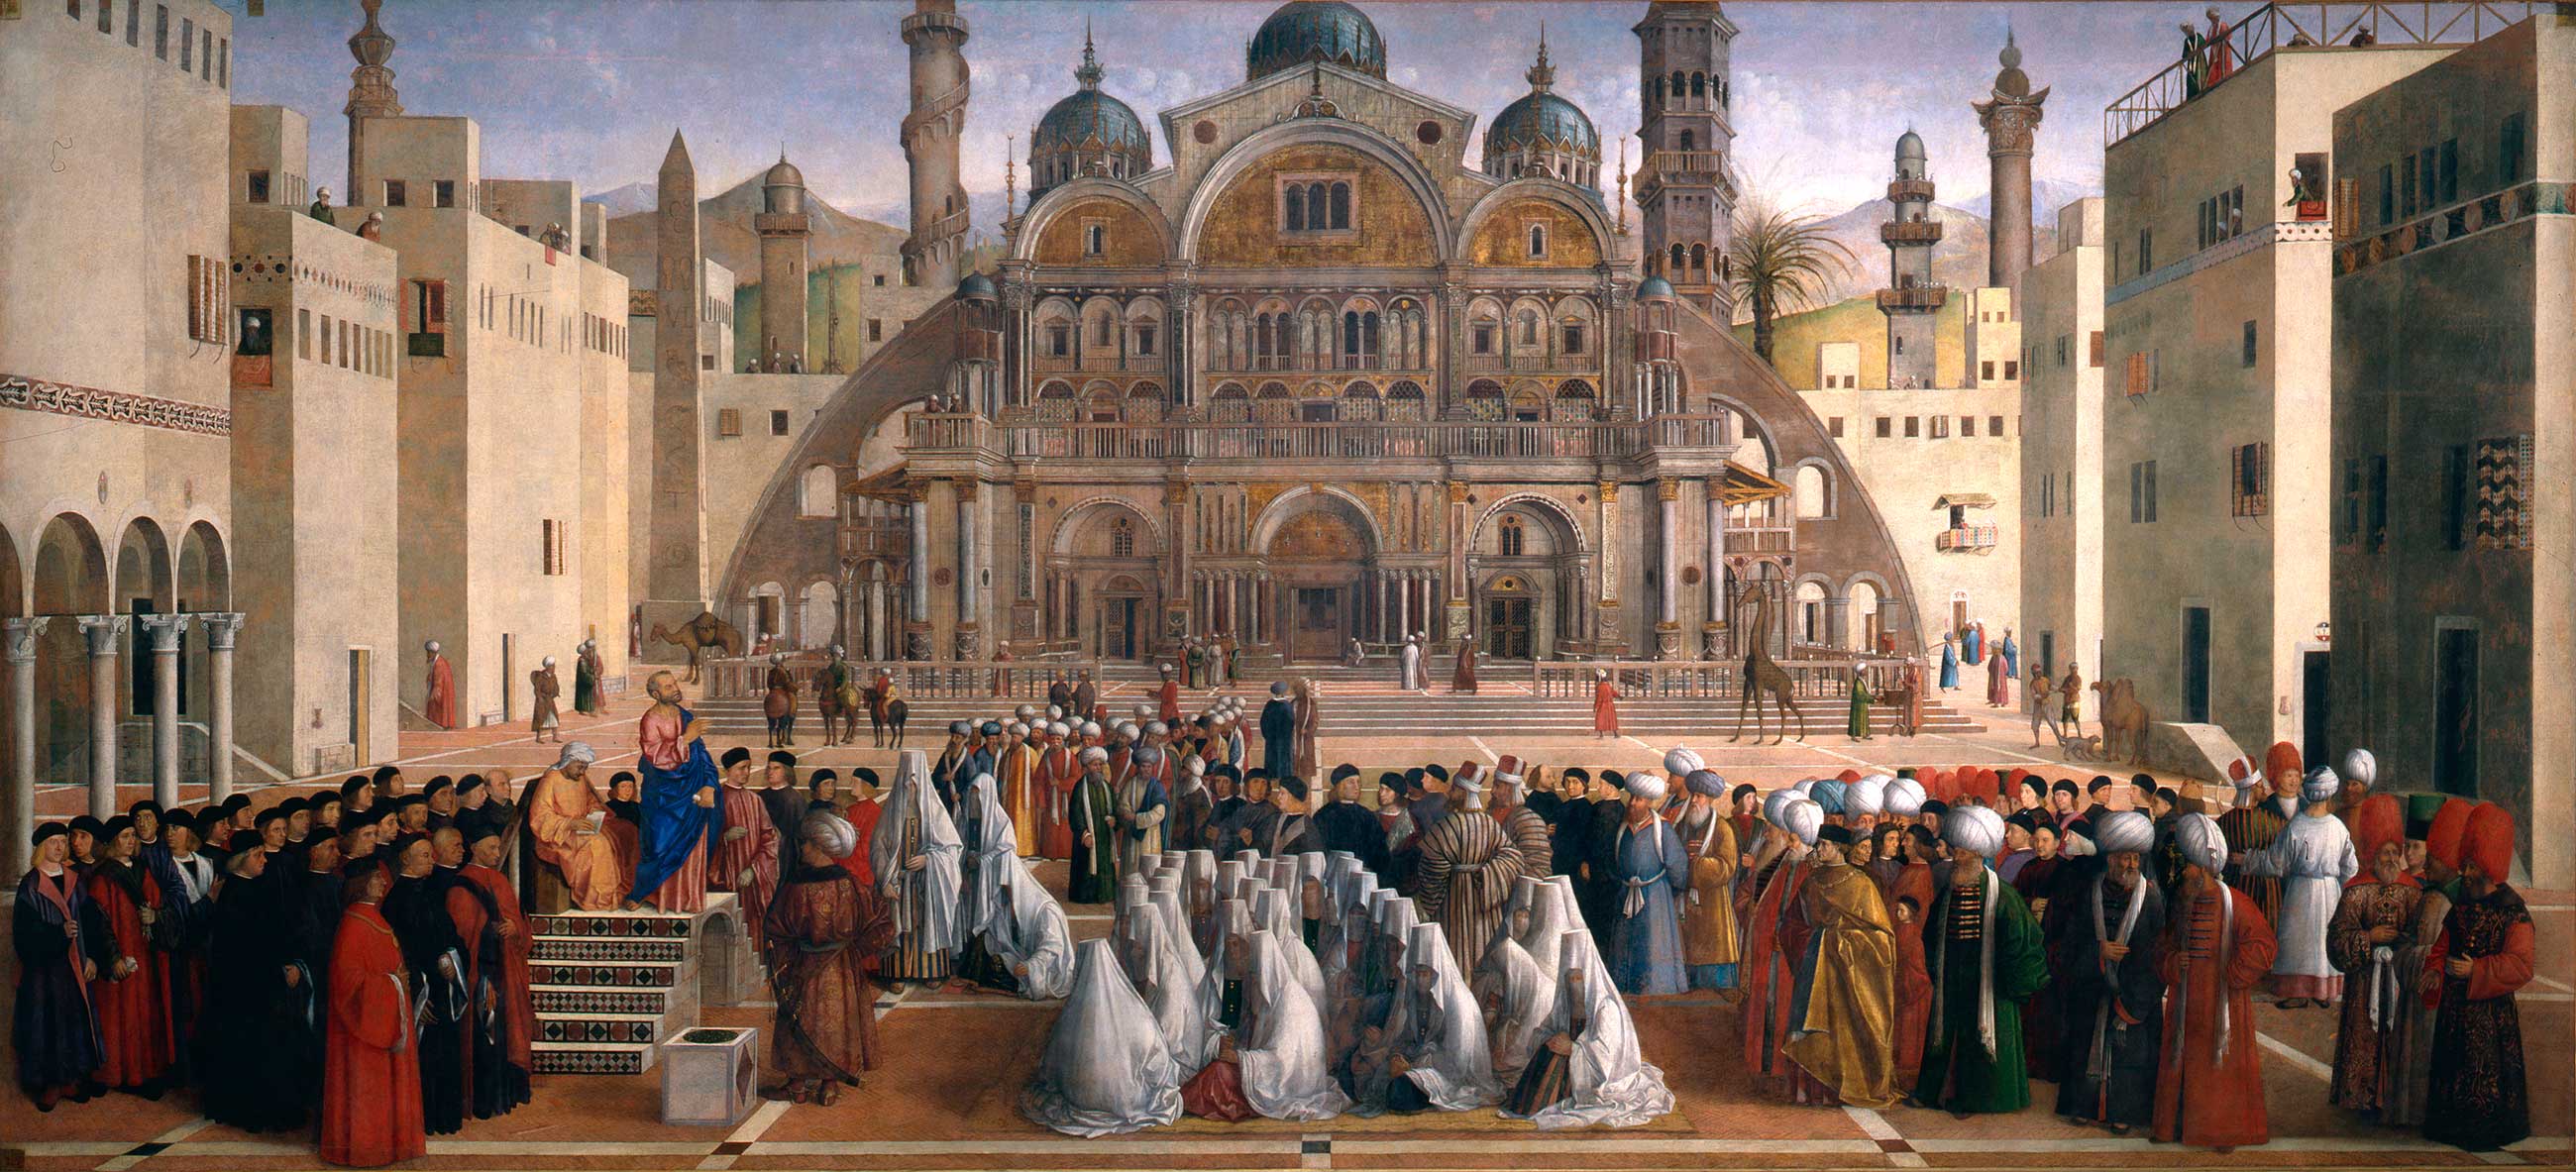 Проповідь св. Марка в Олександрії by Gentile Bellini and Giovanni Bellini - 1504-07 - 347 × 770 см 